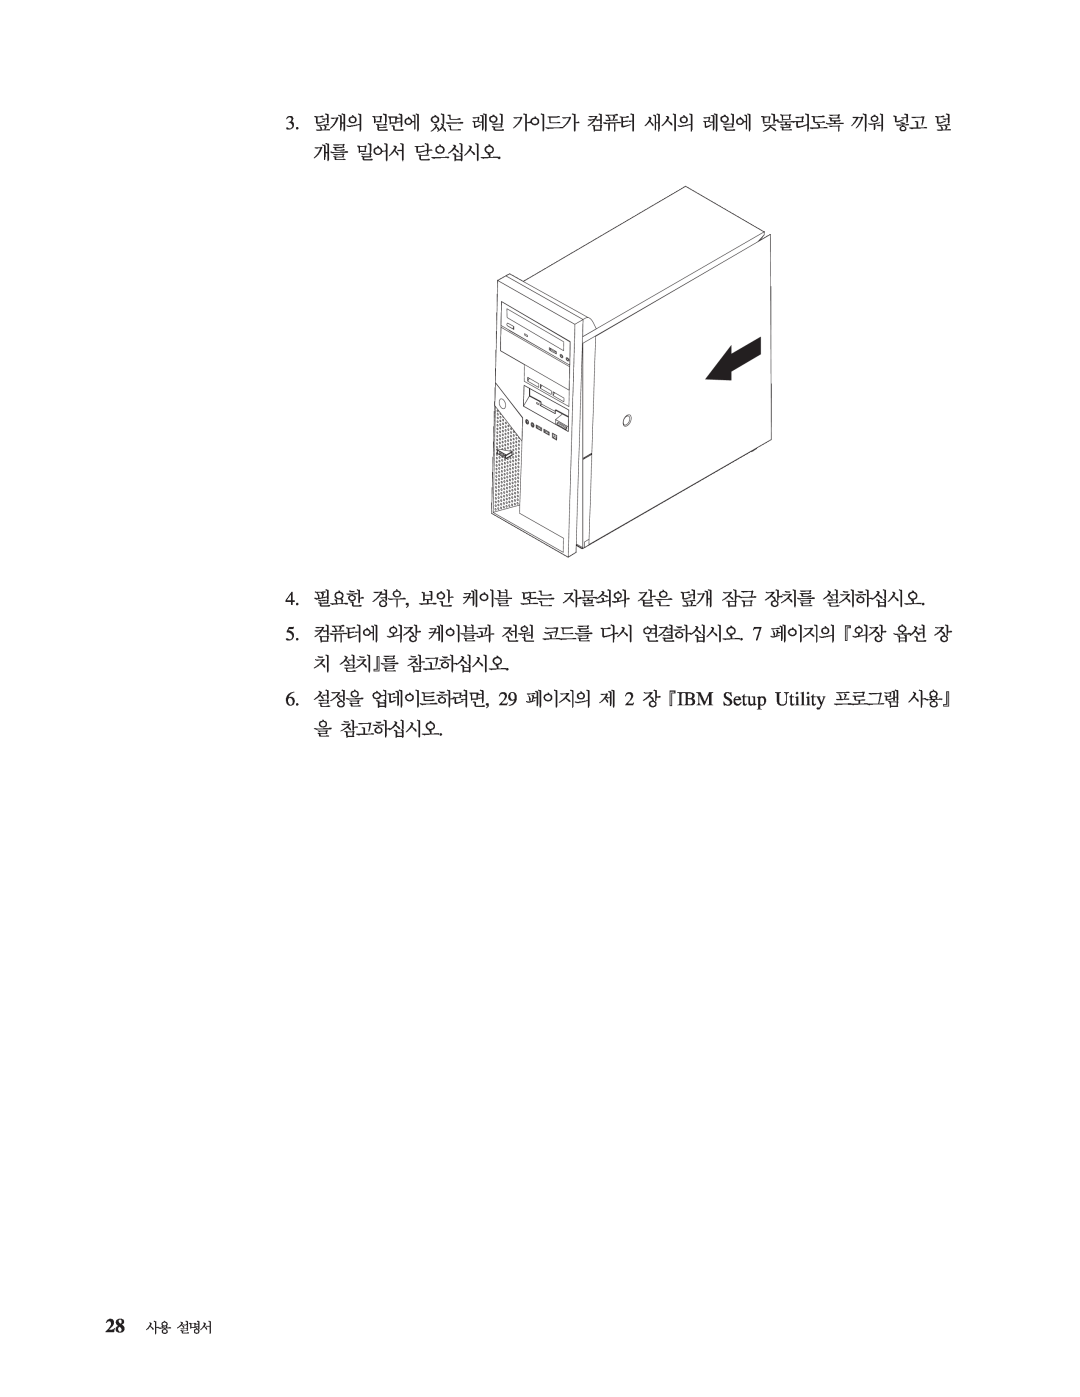 IBM 8143 manual 6. , 29 2 IBM Setup Utility 